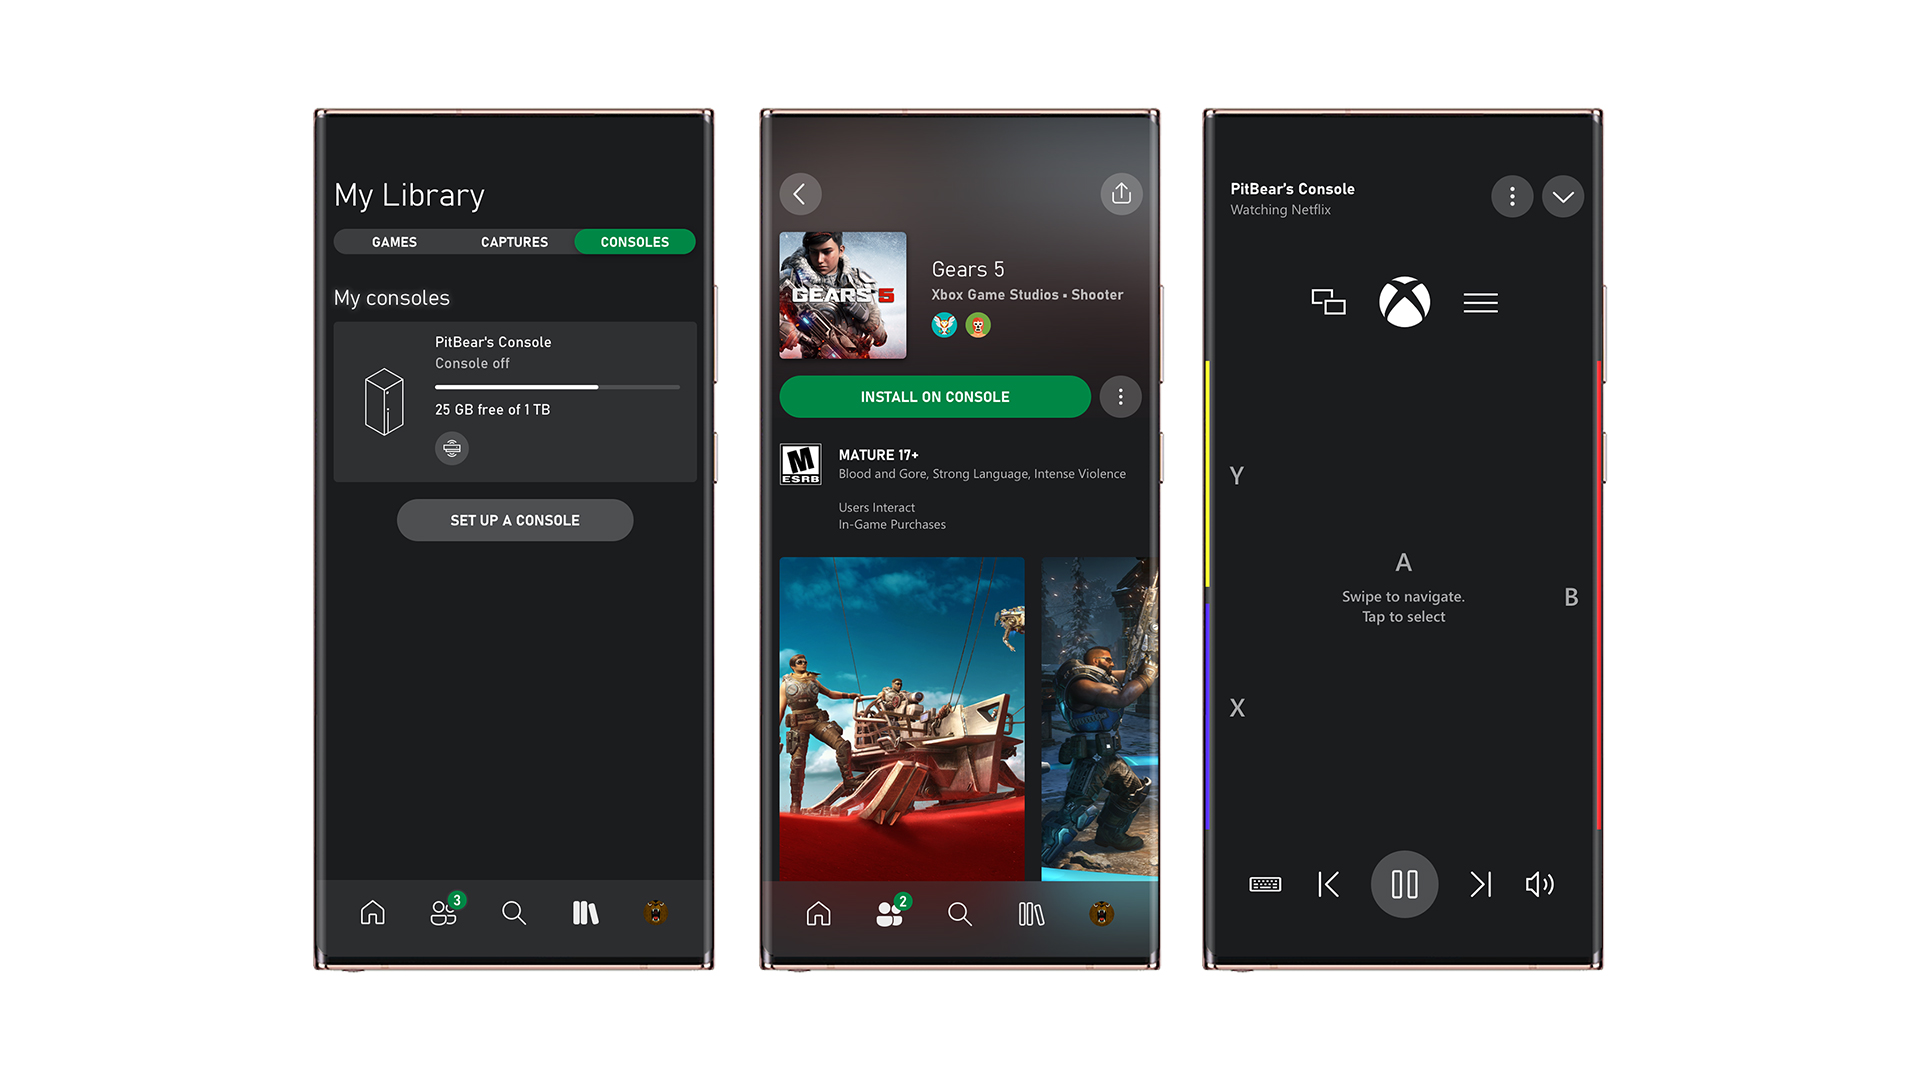 Noch mehr Spaß, Spiele und Freunde mit der neuen Xbox App (Beta)